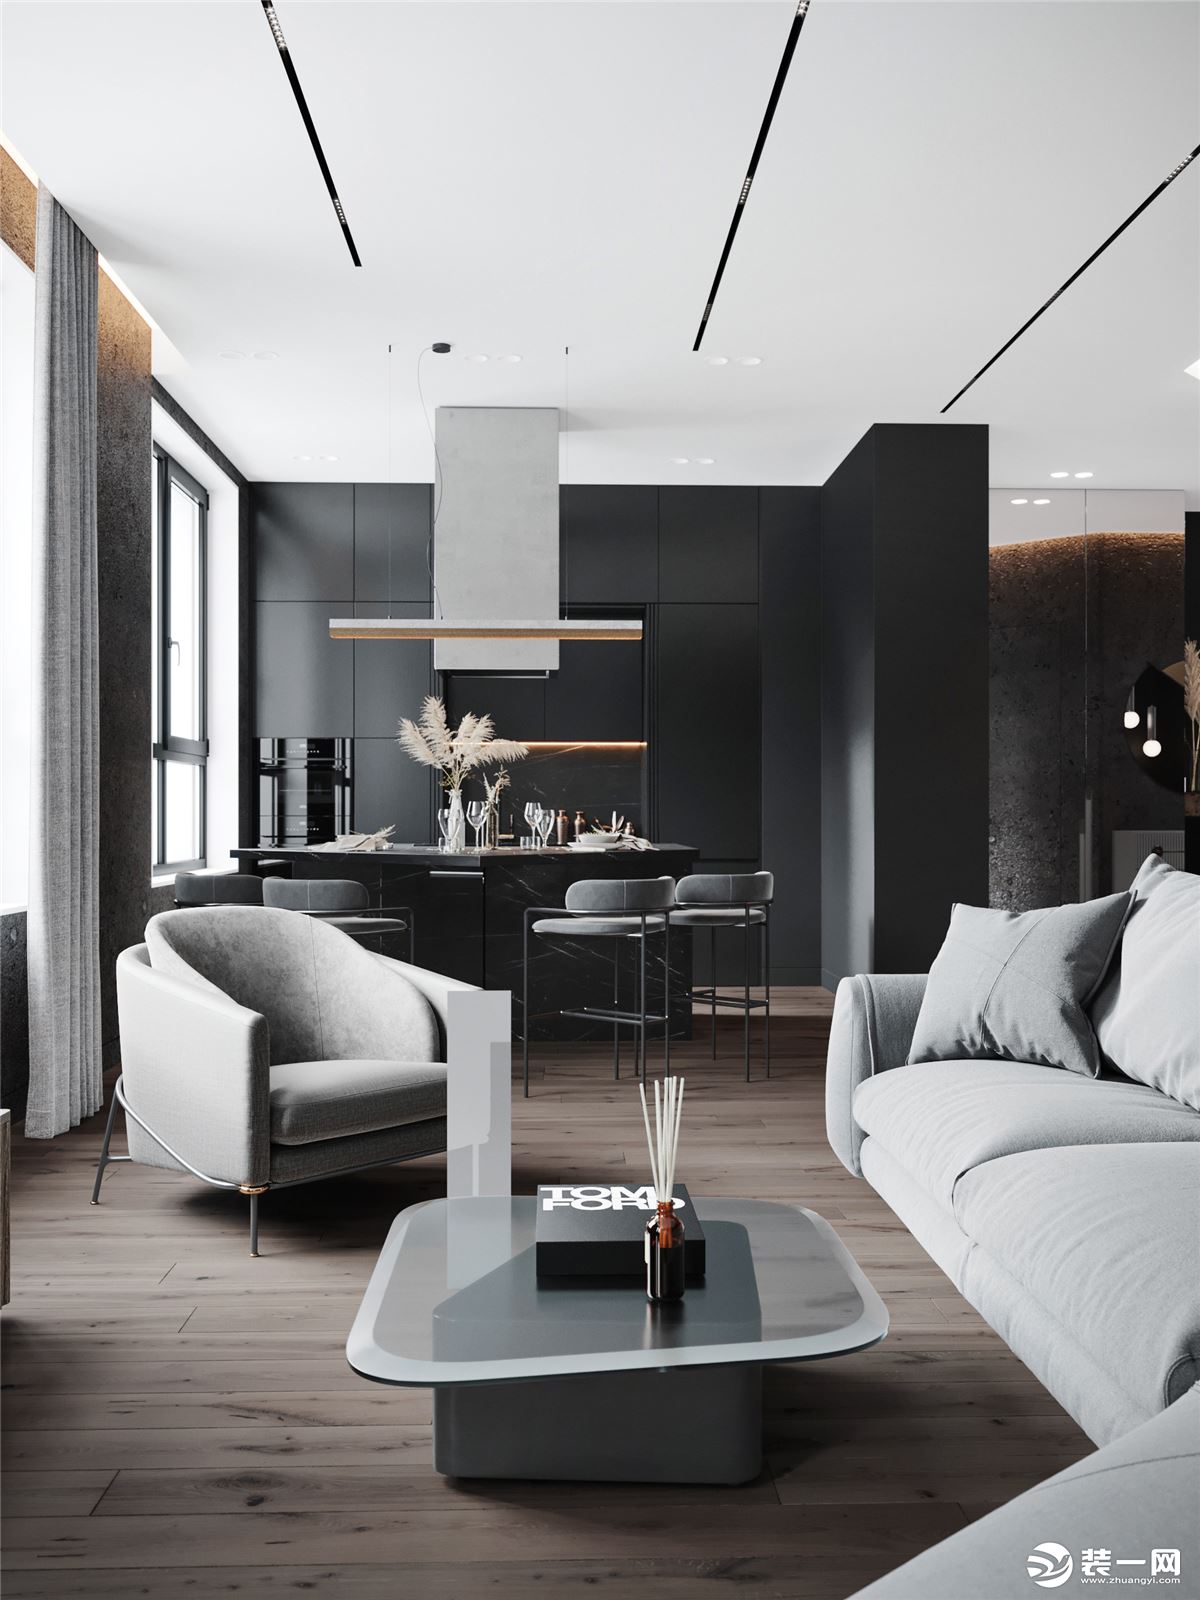 黑白色装修风格的客厅是目前非常流行的一种设计，黑白的设计让客厅变得更加沉稳且充满时尚感